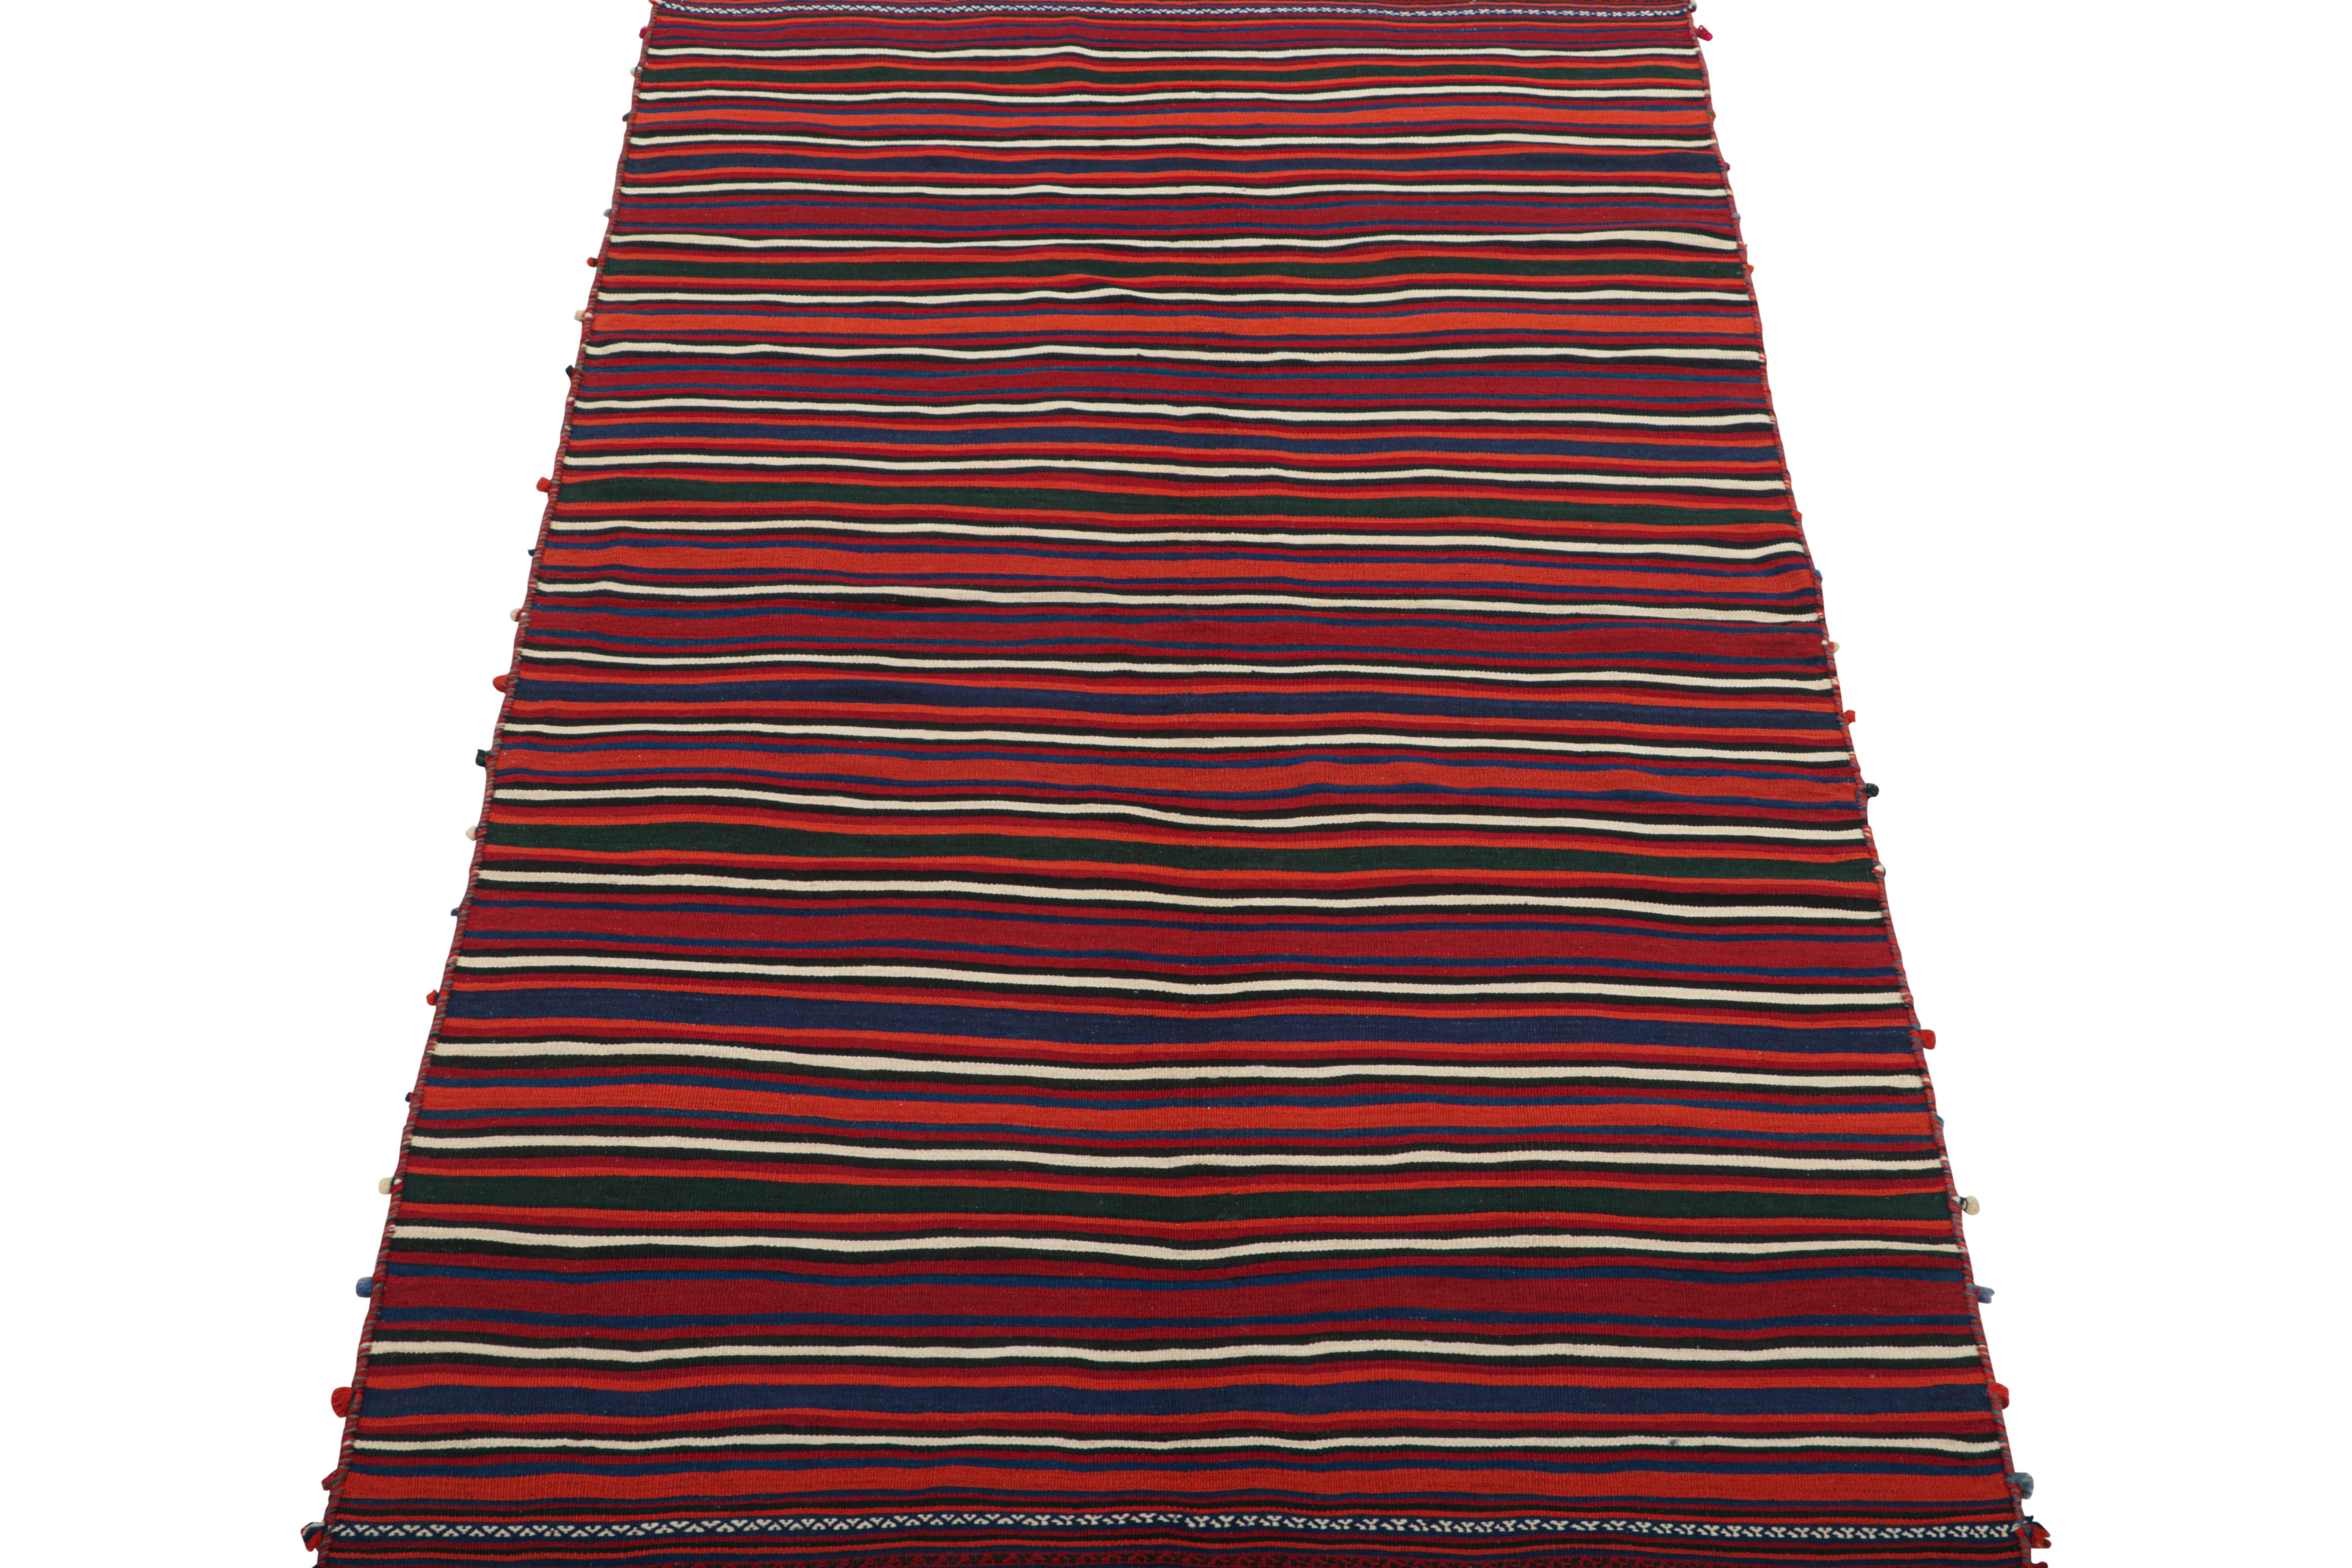 Dieser 6x10 große persische Kelim ist ein Stammesläufer aus der Mitte des Jahrhunderts, handgewebt aus Wolle um 1950-1960.

Über das Design: 

Sein Design bevorzugt marineblaue und burgunderrote Streifen mit schwarzen und gebrochen weißen Noten in